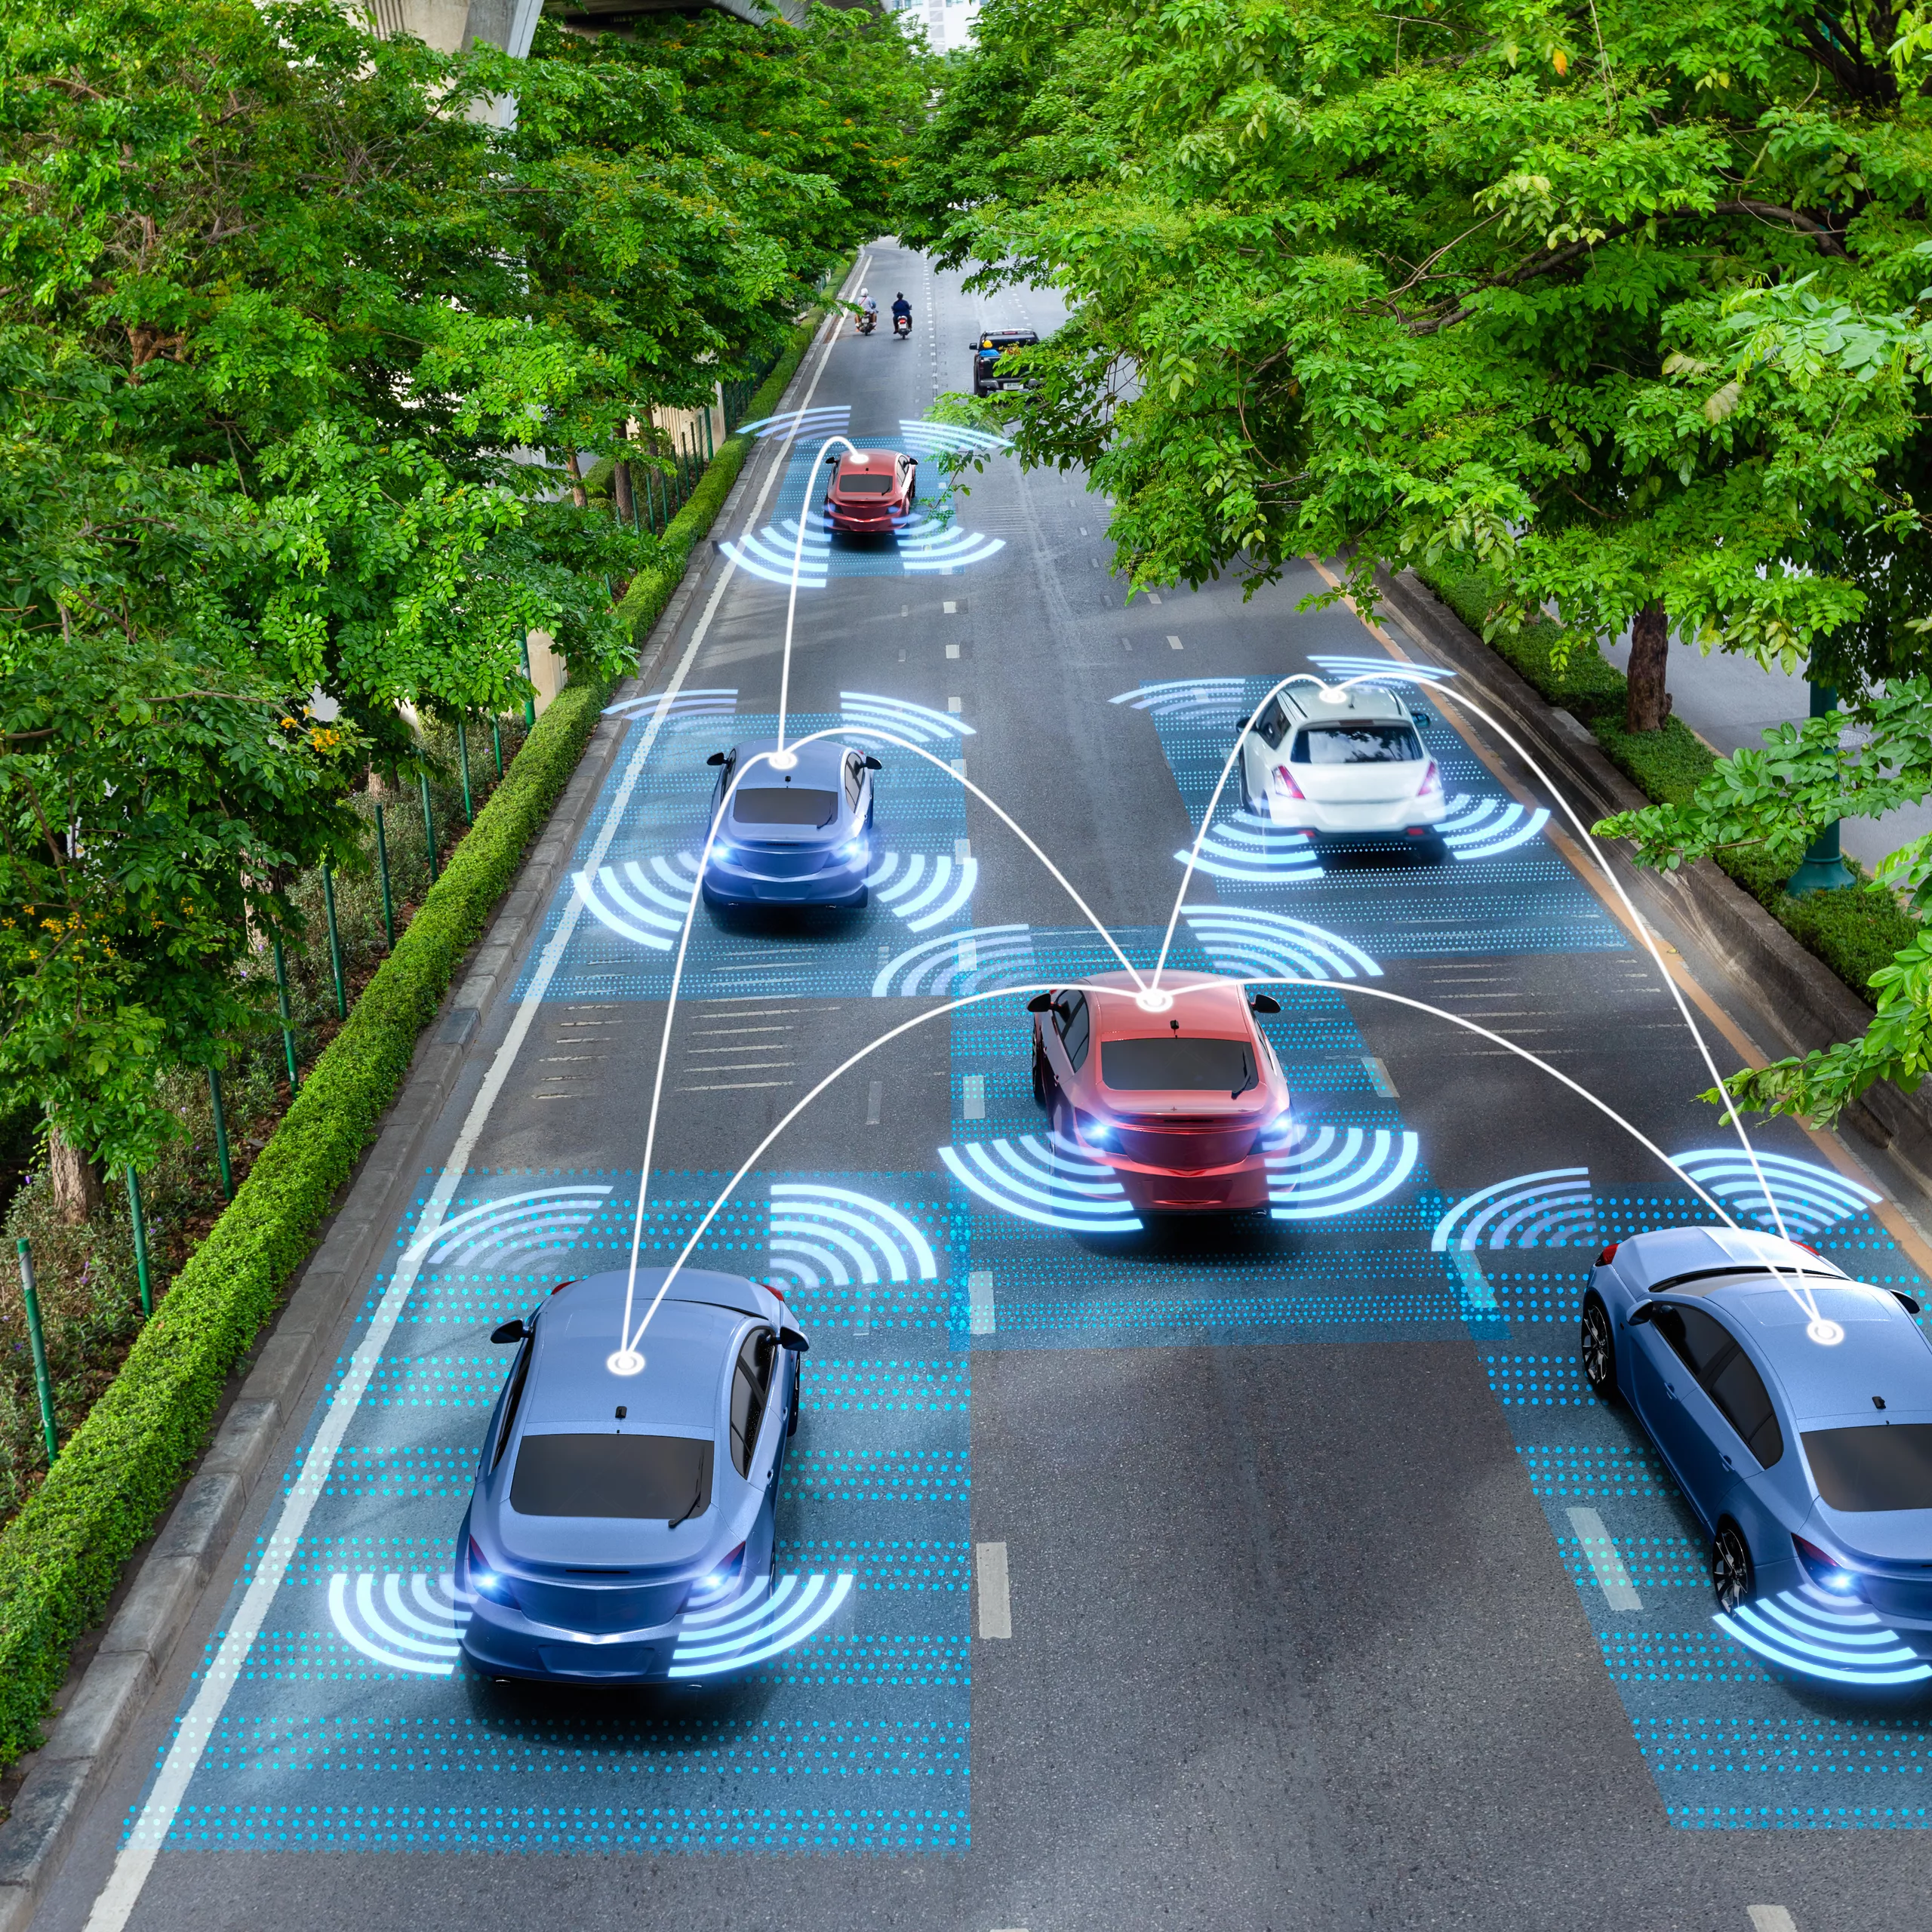 Künstliche Intelligenz erkennt Aktivitäten im Fahrzeuginnenraum